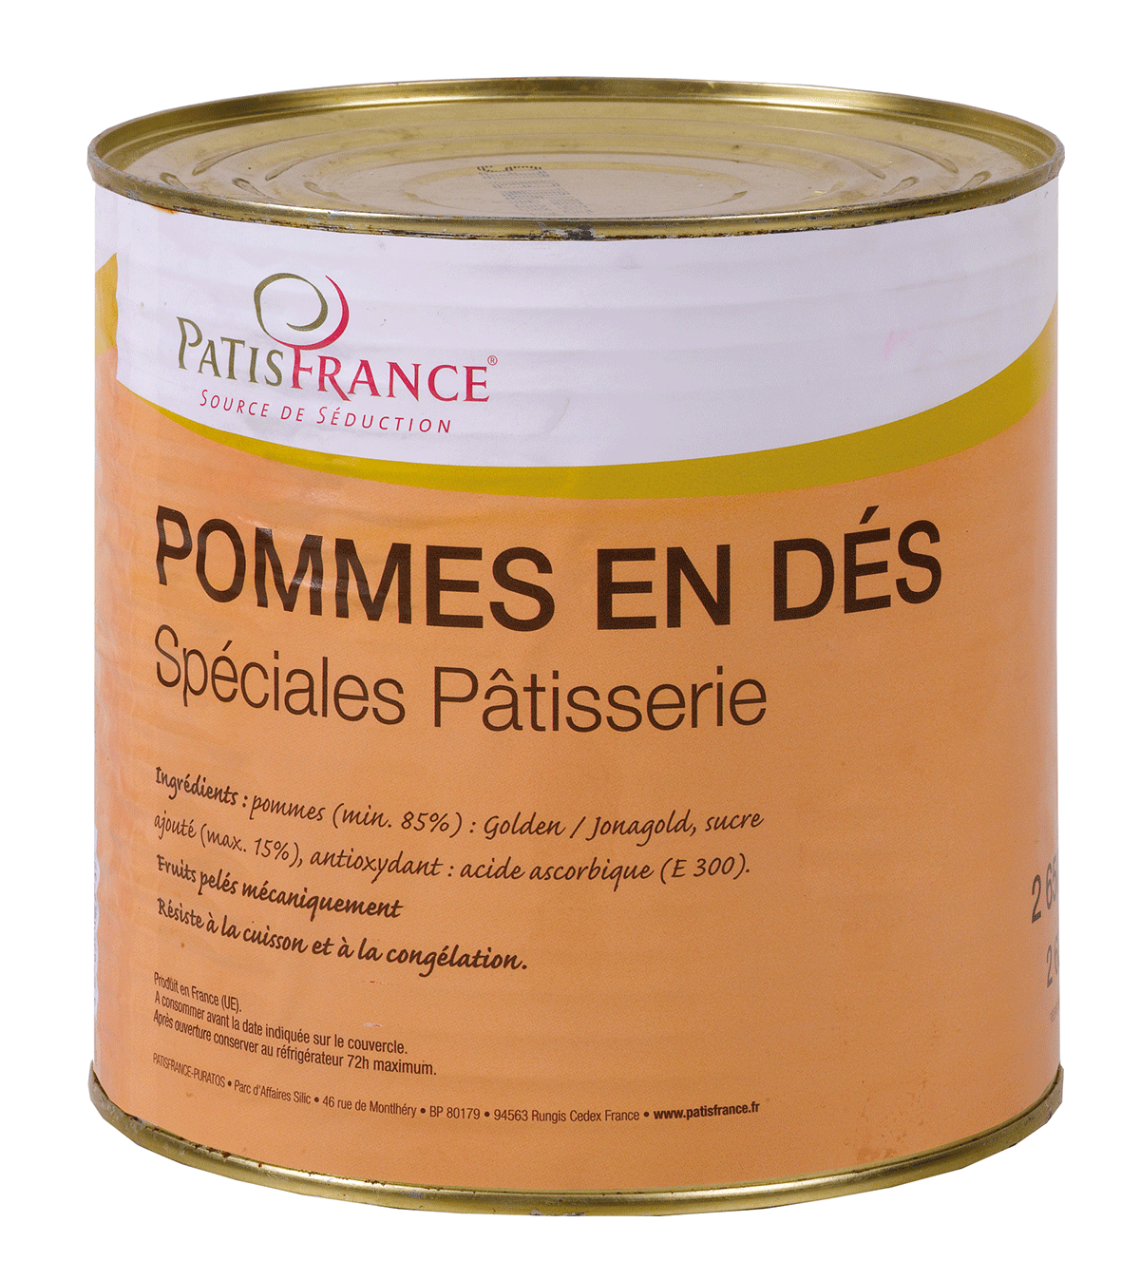 Compote de pommes pâtissières 33% 4,350 kg